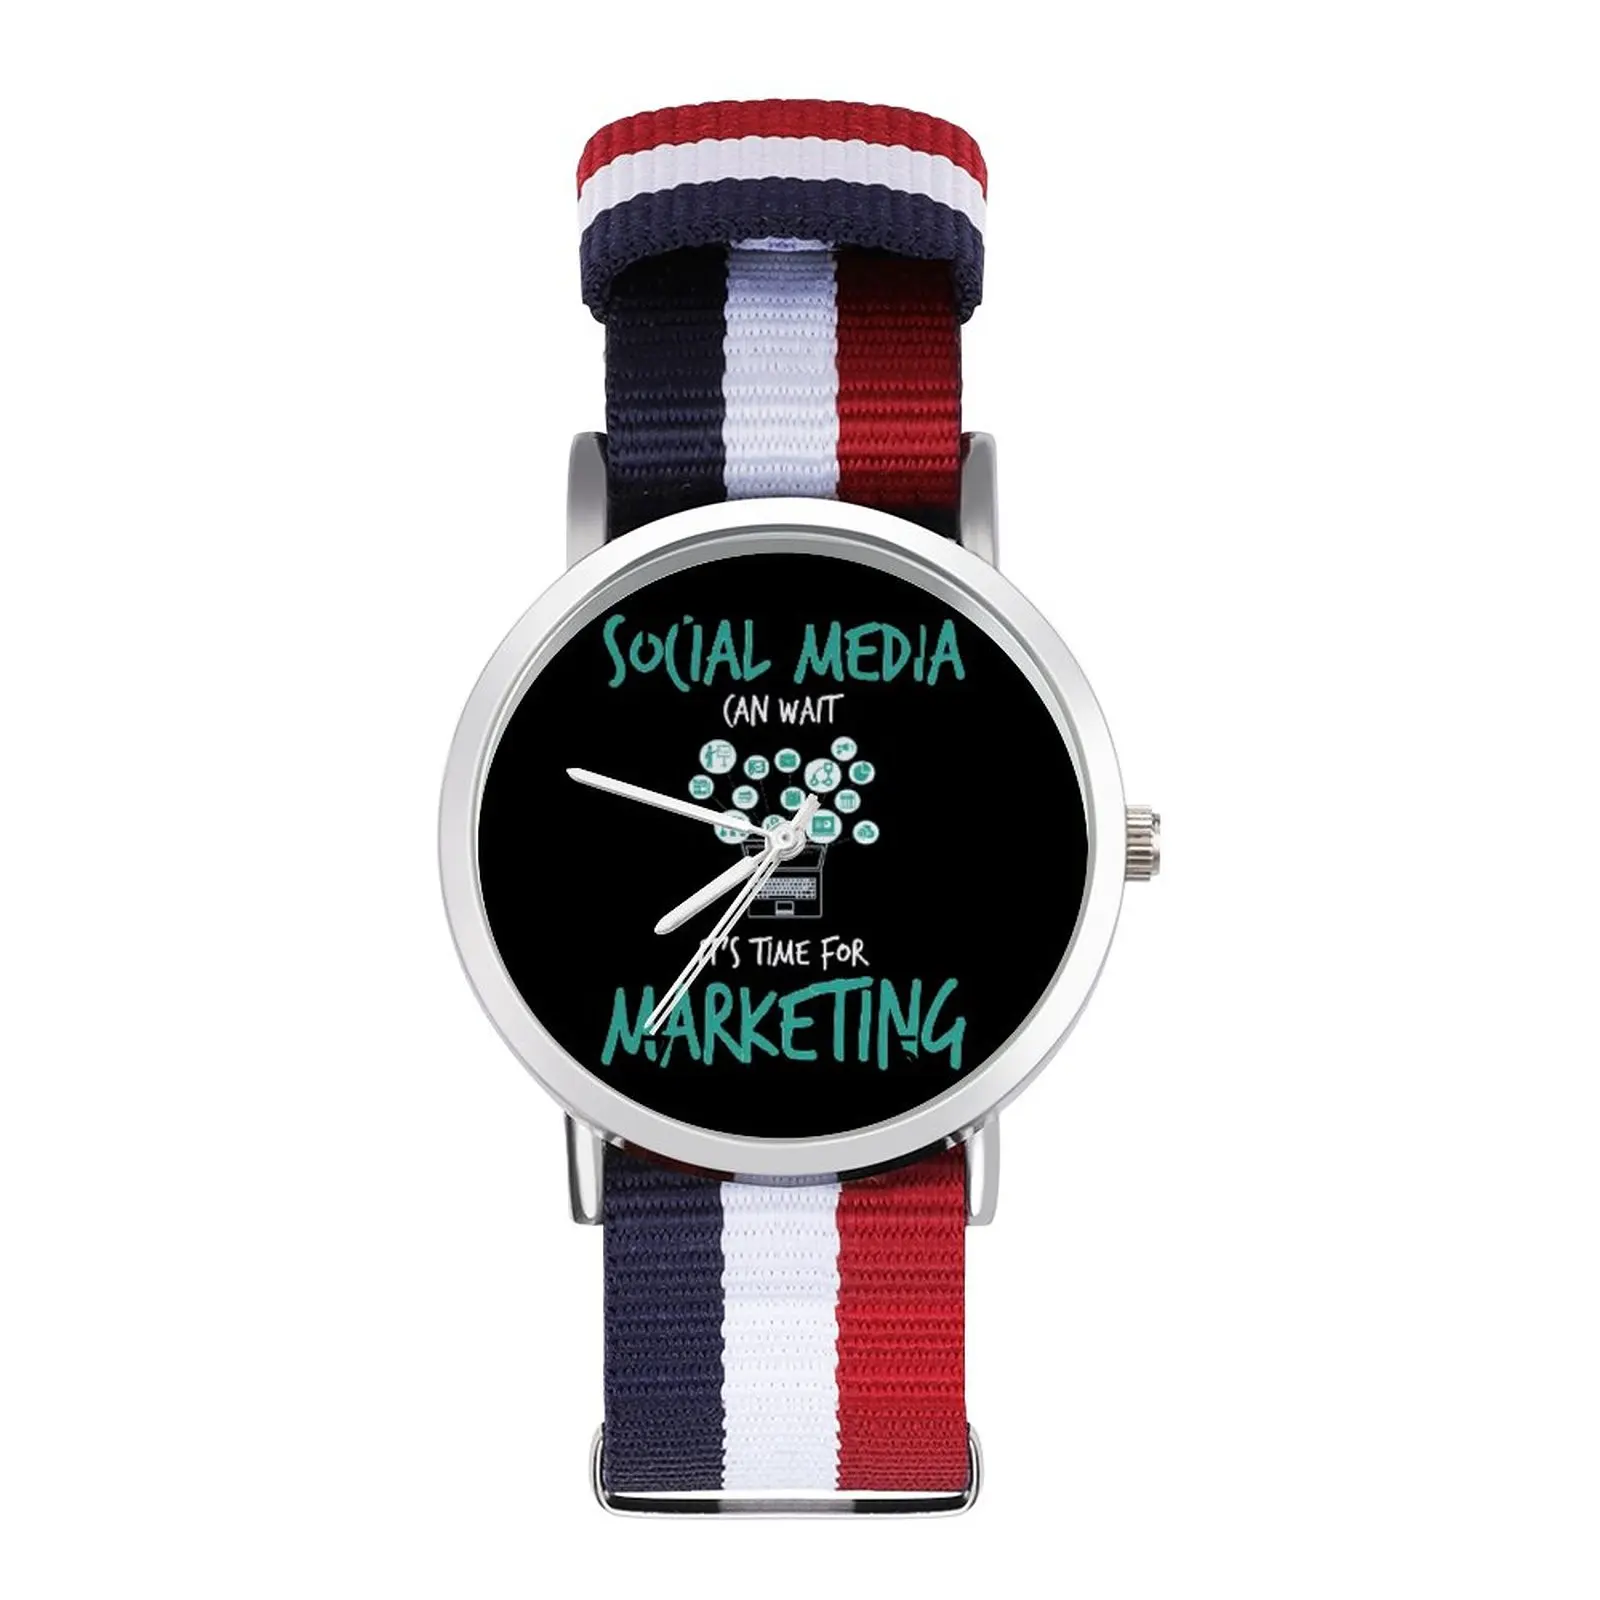 

Профессиональные кварцевые часы ретро фото наручные часы бизнес оптовая продажа наручные часы для девушек